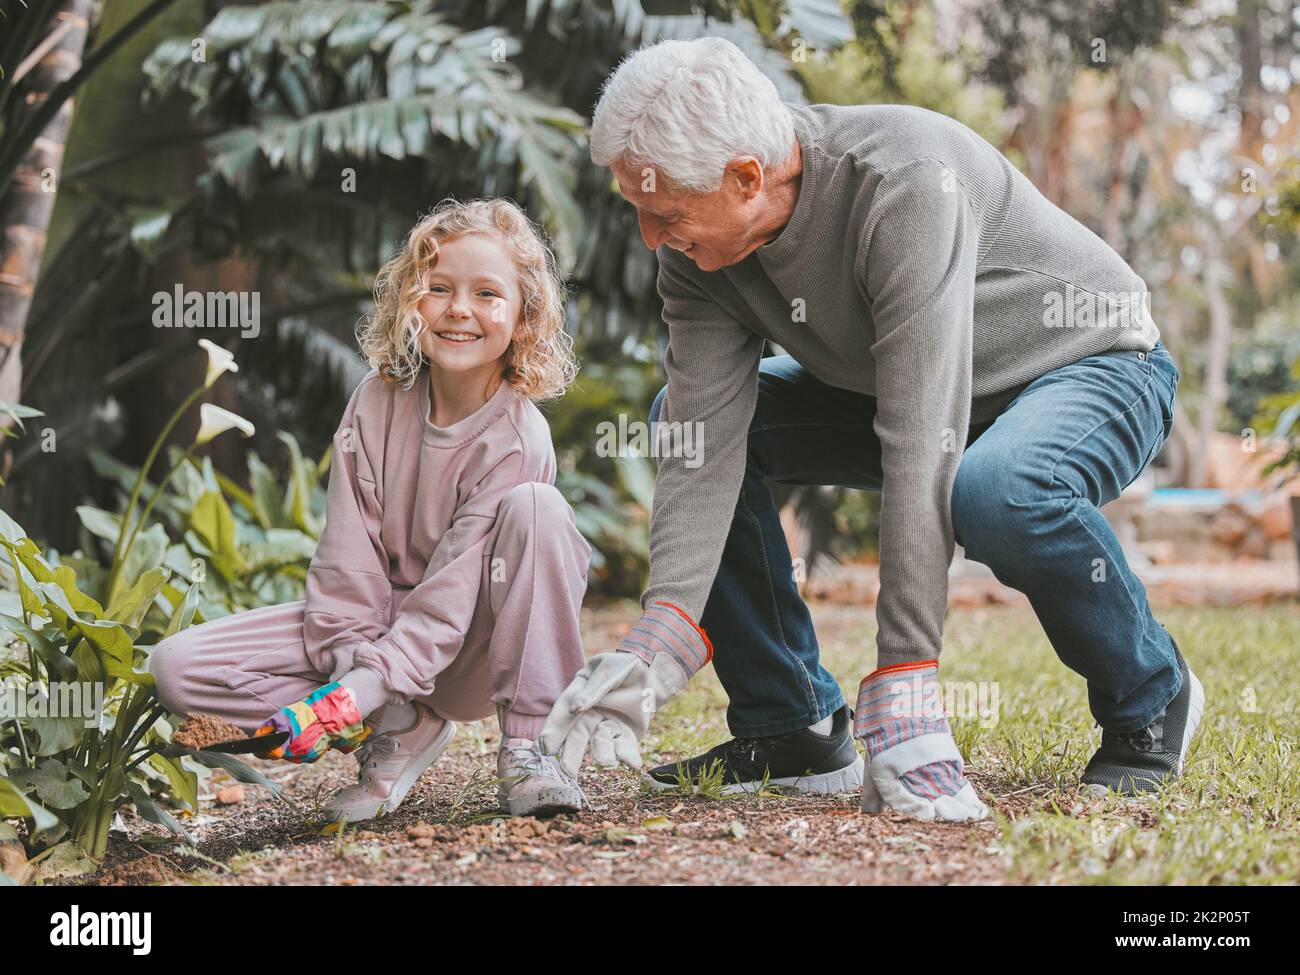 Grand-père connaît les meilleurs secrets de jardinage. Photo d'une adorable petite fille en jardinage avec son grand-père. Banque D'Images